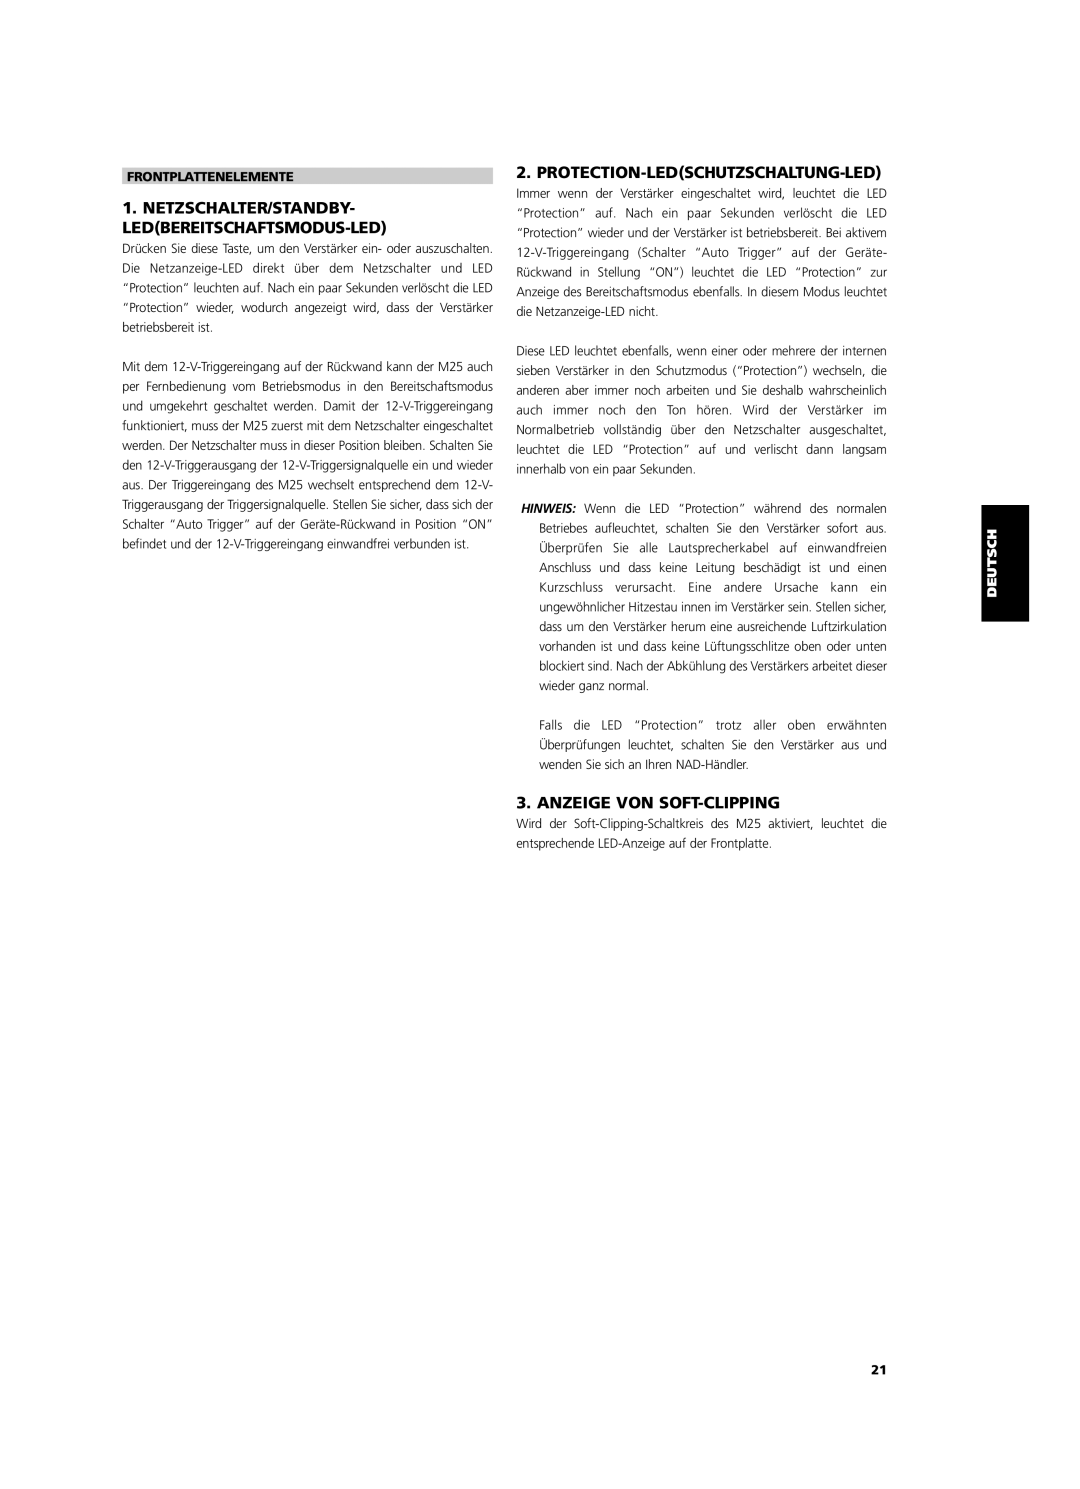 NAD M25 Netzschalter/Standby- Ledbereitschaftsmodus-Led, Protection-Ledschutzschaltung-Led, Anzeige Von Soft-Clipping 